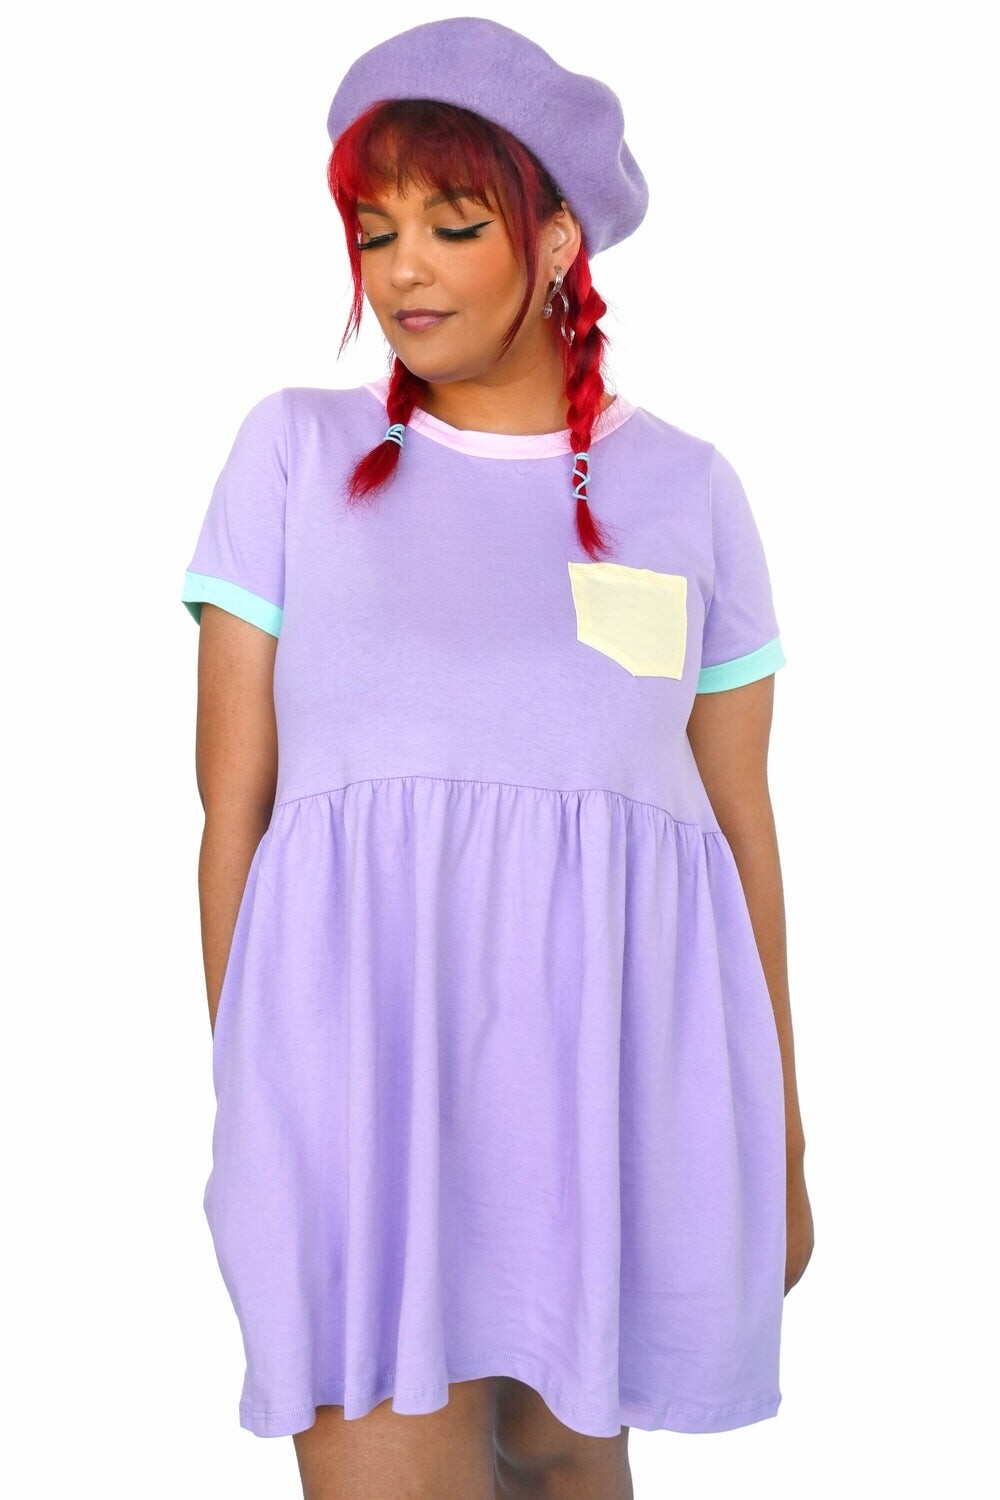 Cadoodle T-shirt Dress Lavender